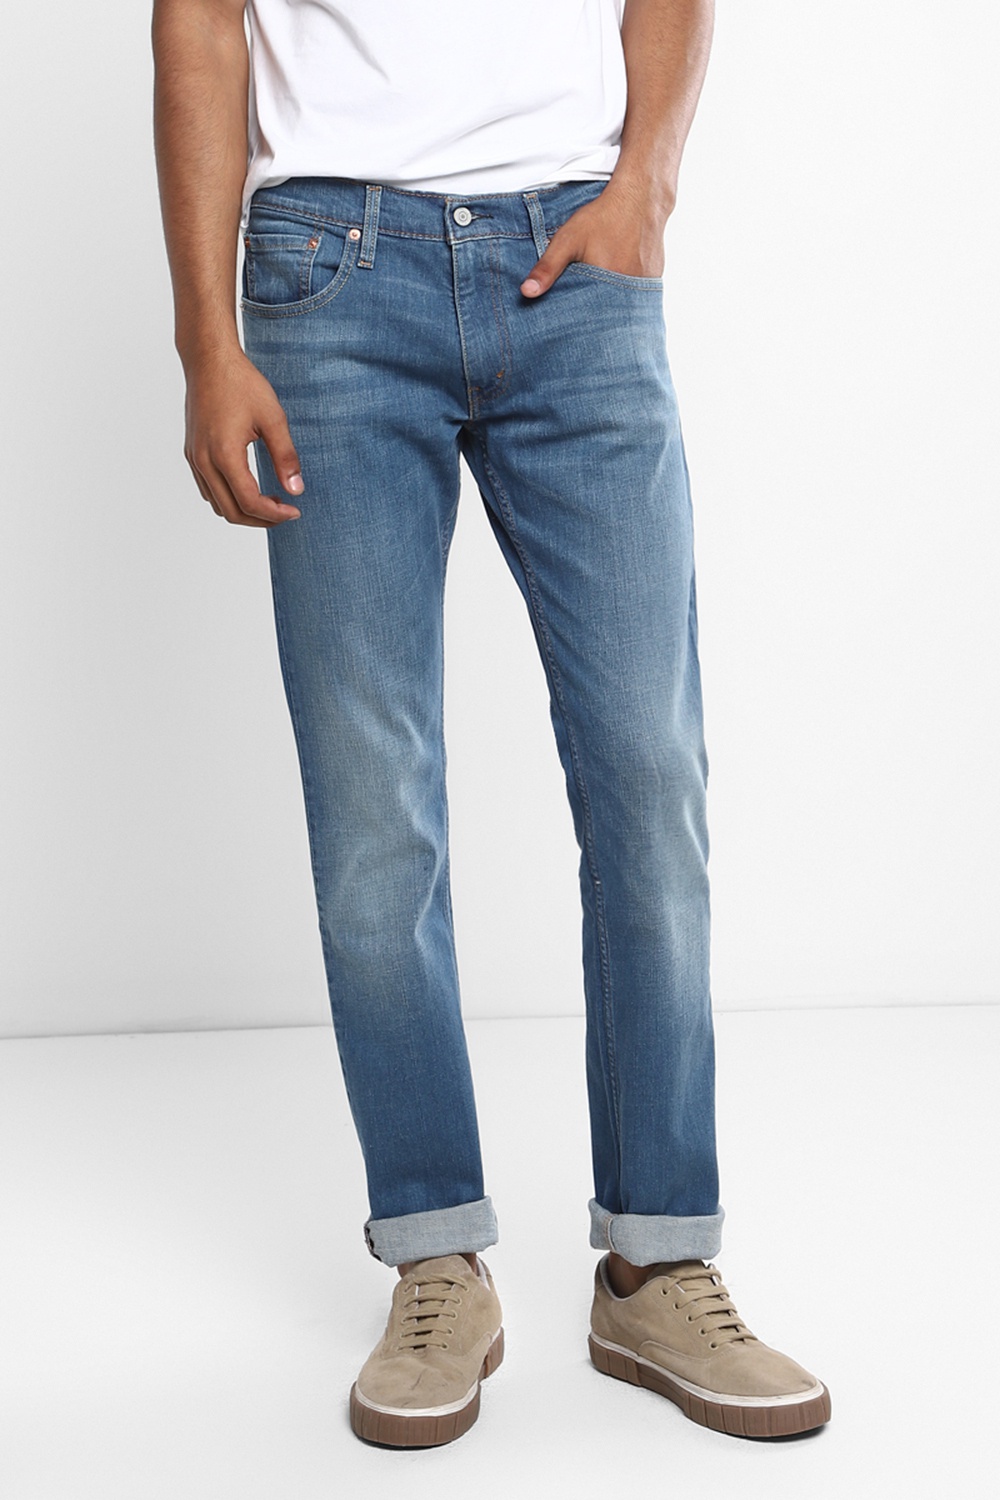 Levi's 65504™ Skinny Men's Jeans | Odel.lk